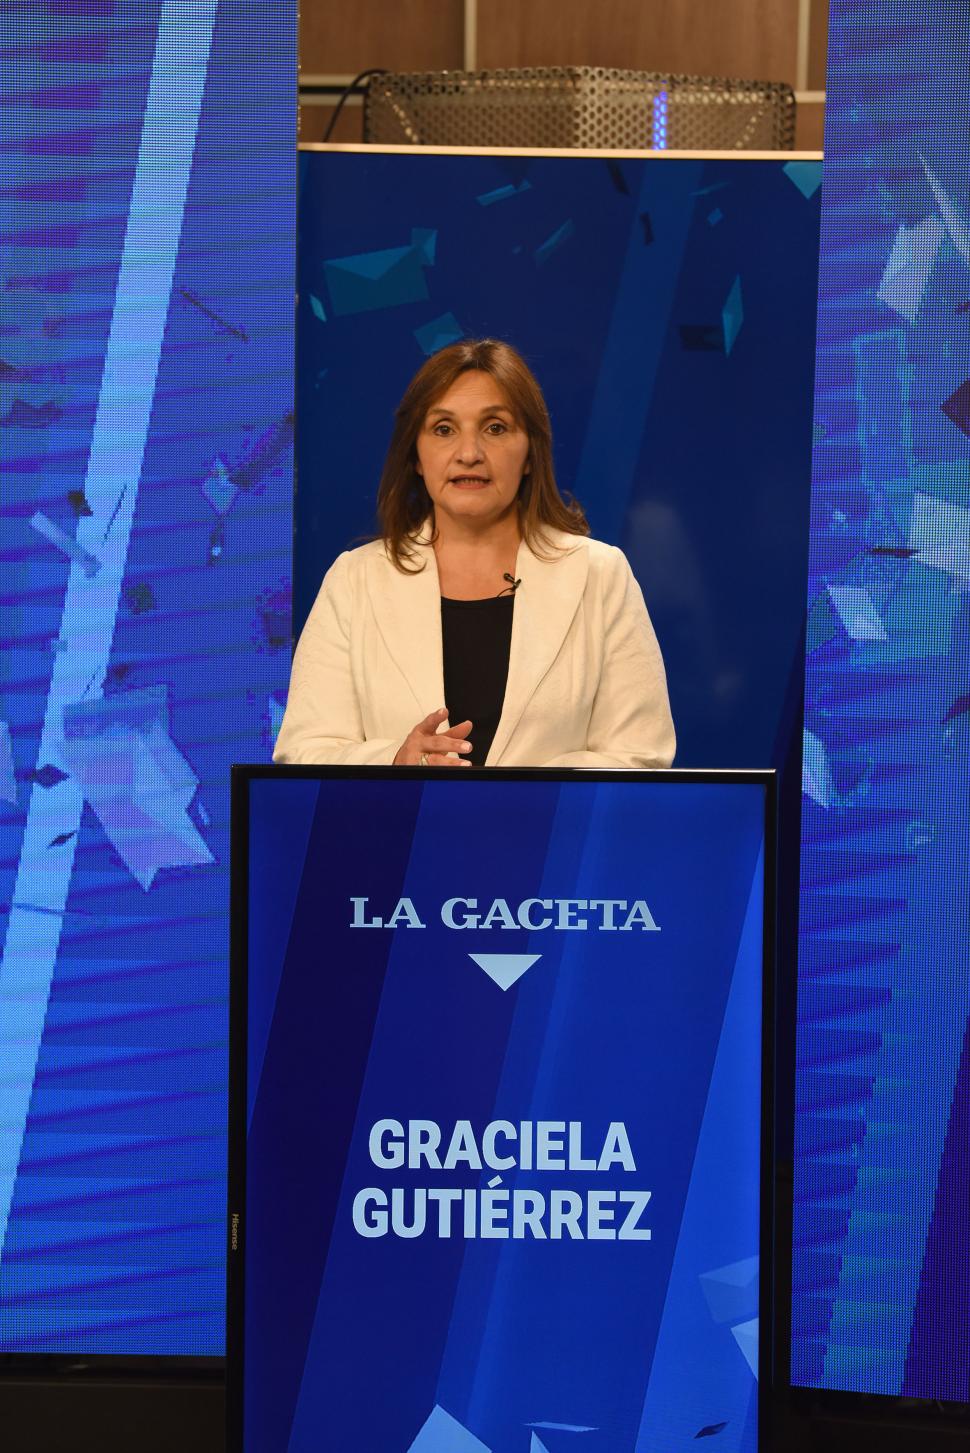 BUEN FINAL. La precandidata a senadora se puso un saco blanco para el debate y siguió la costumbre de la mayoría de las mujeres que participaron en Tucumán Debate.